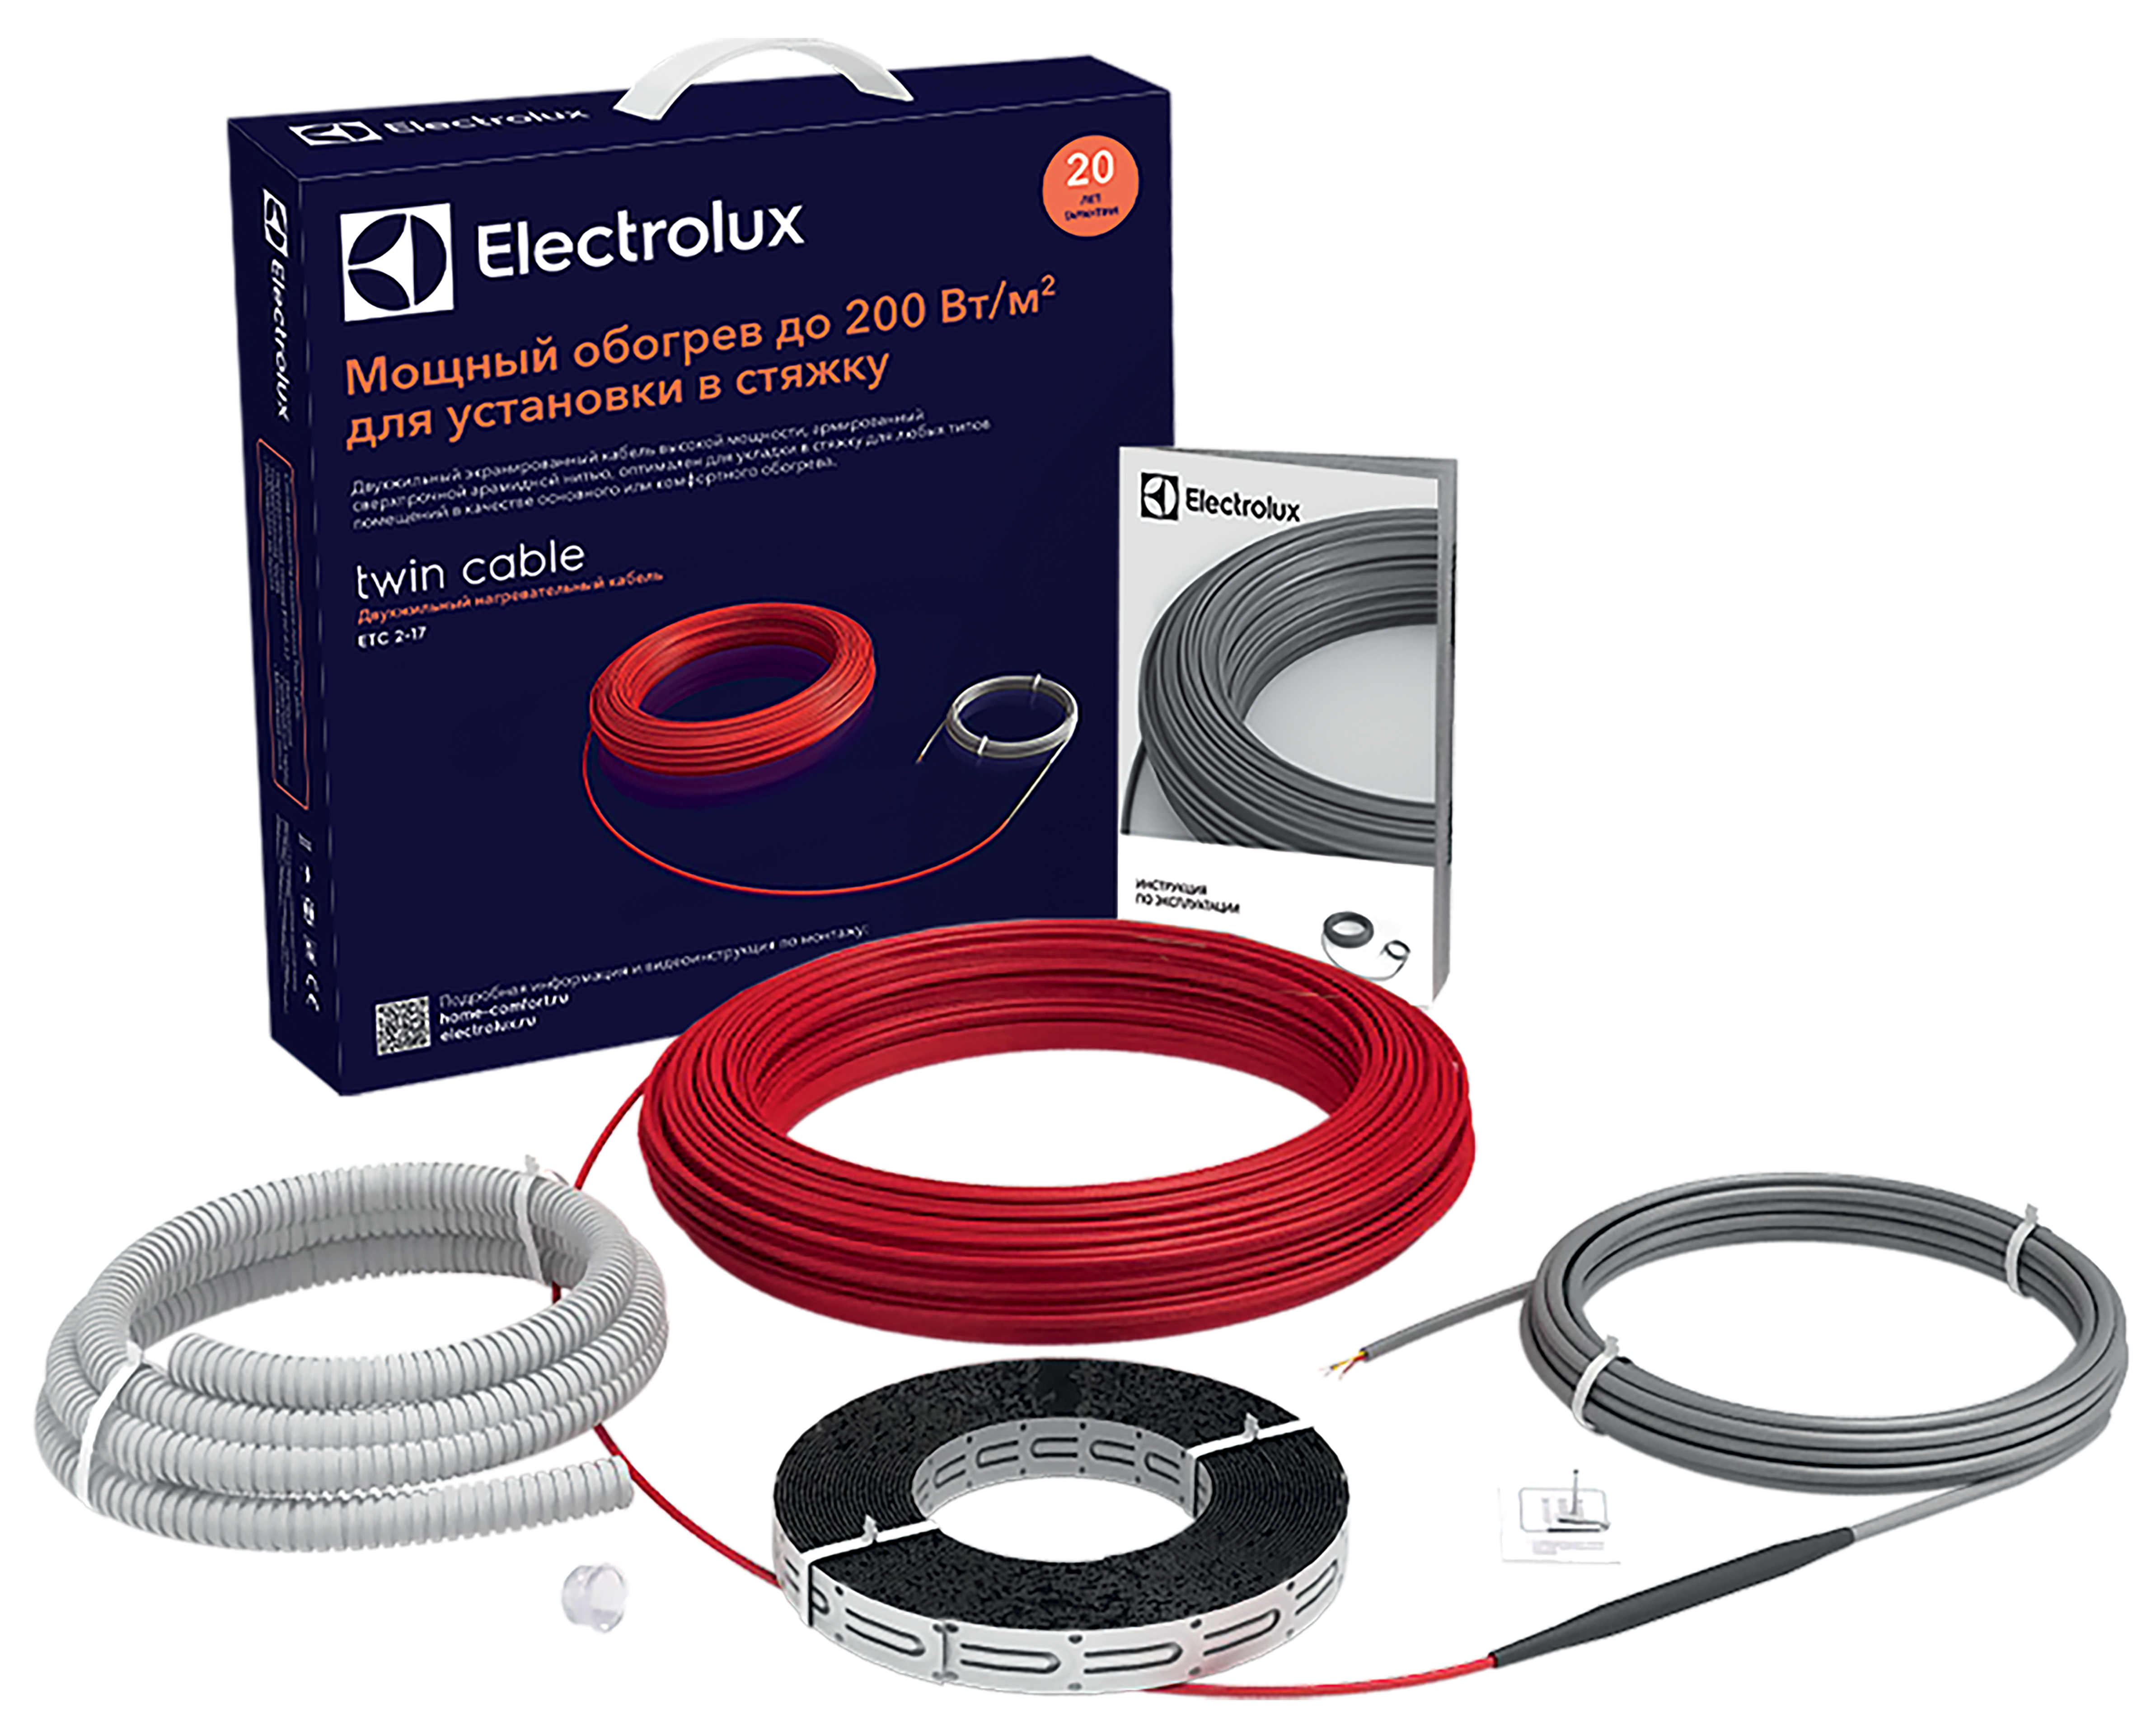 Теплый пол Electrolux под линолеум Electrolux Twin Cable ETC 2-17-200